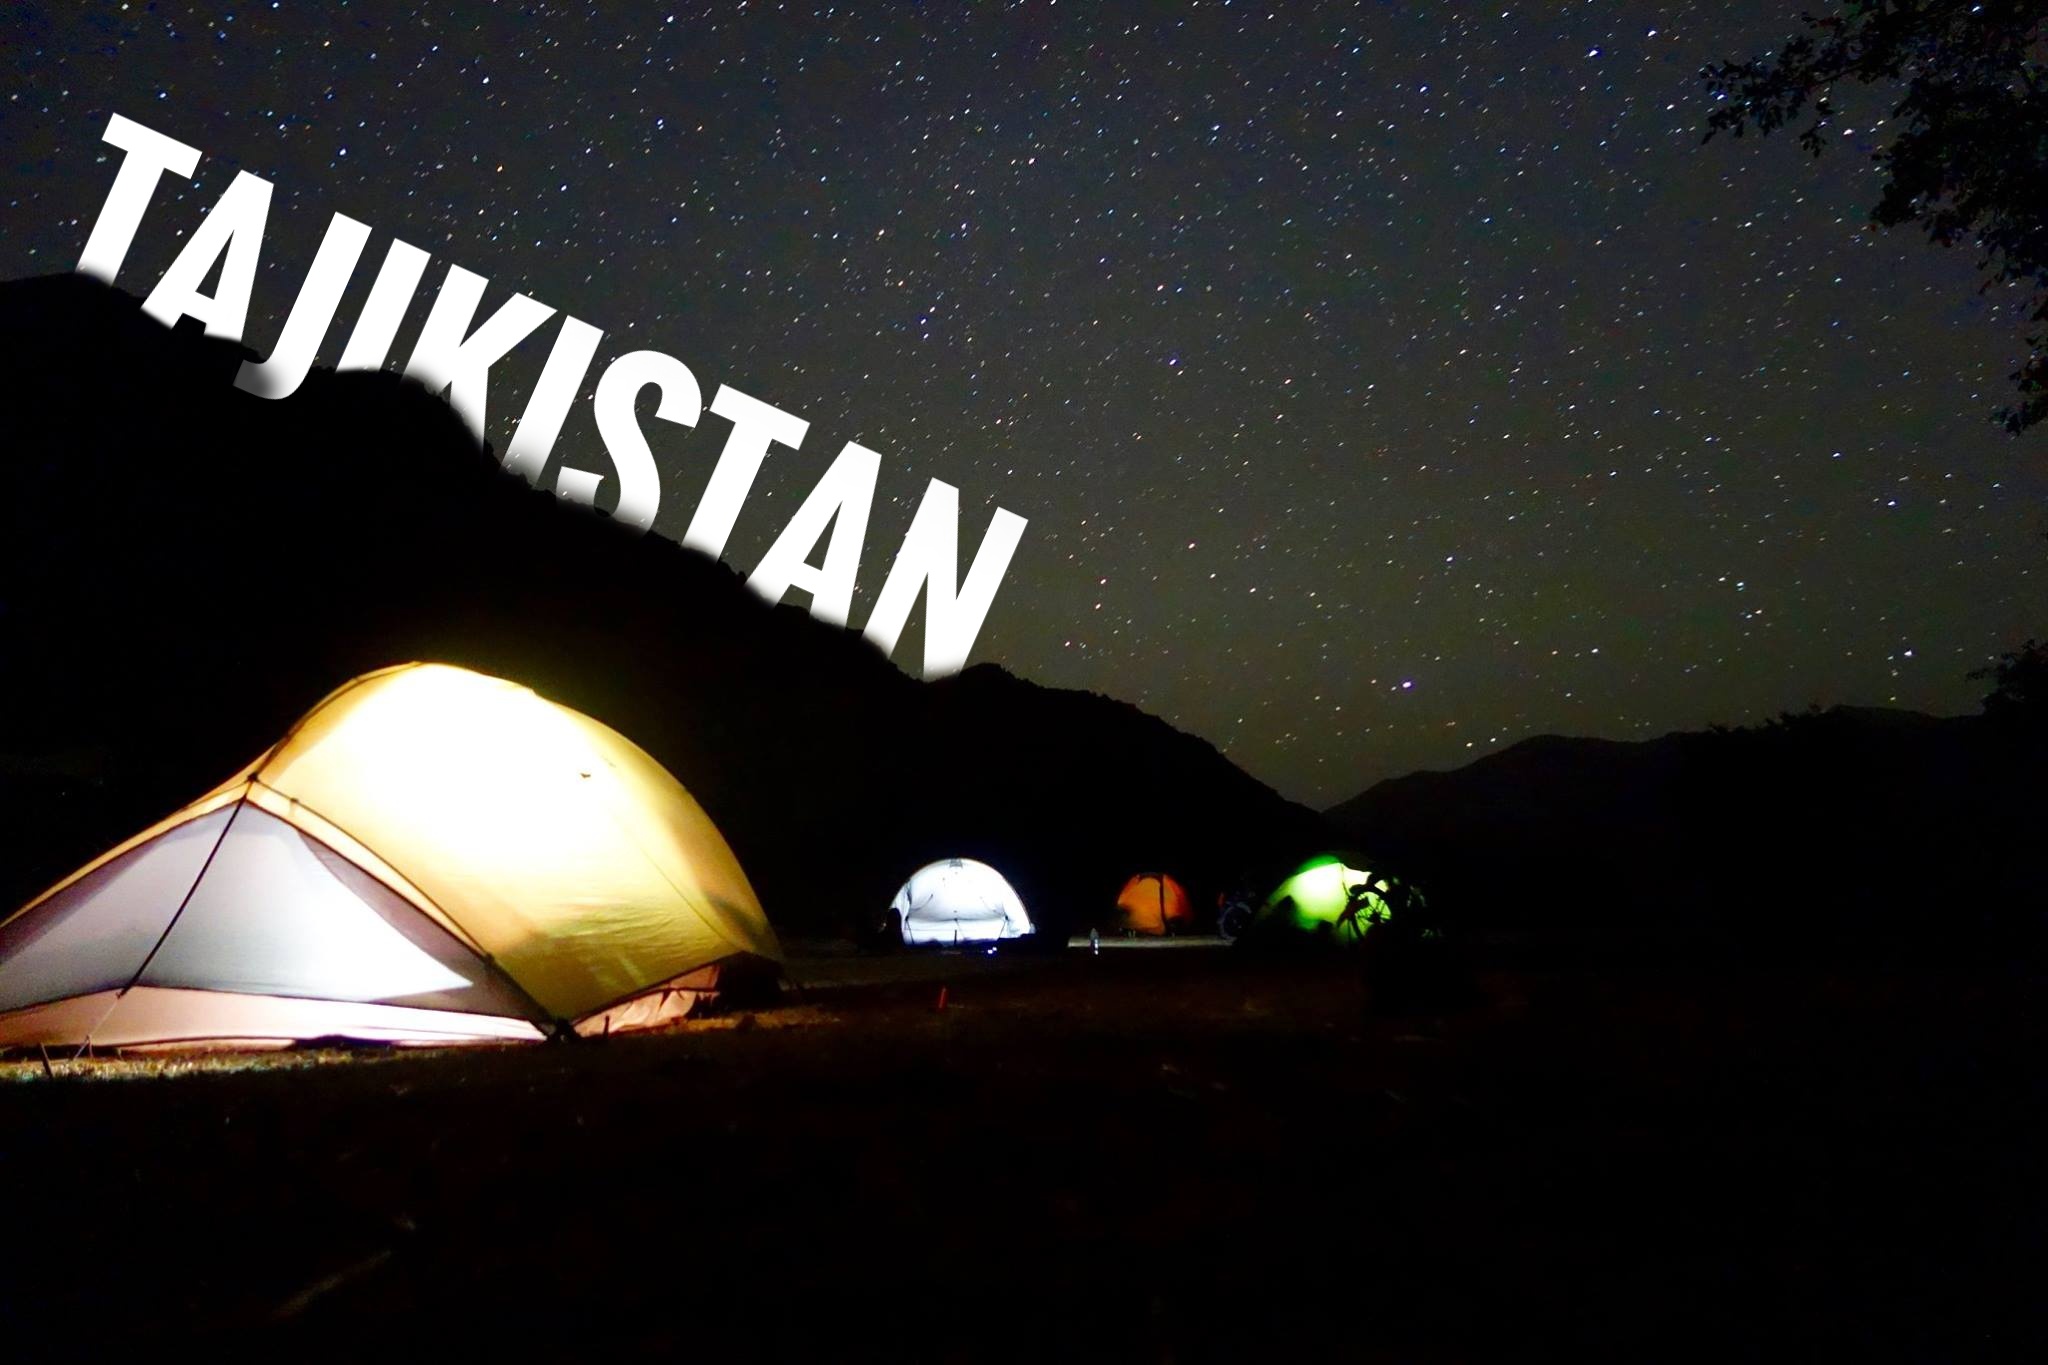 Tagikistan in bici – Cyclolenti [Video]